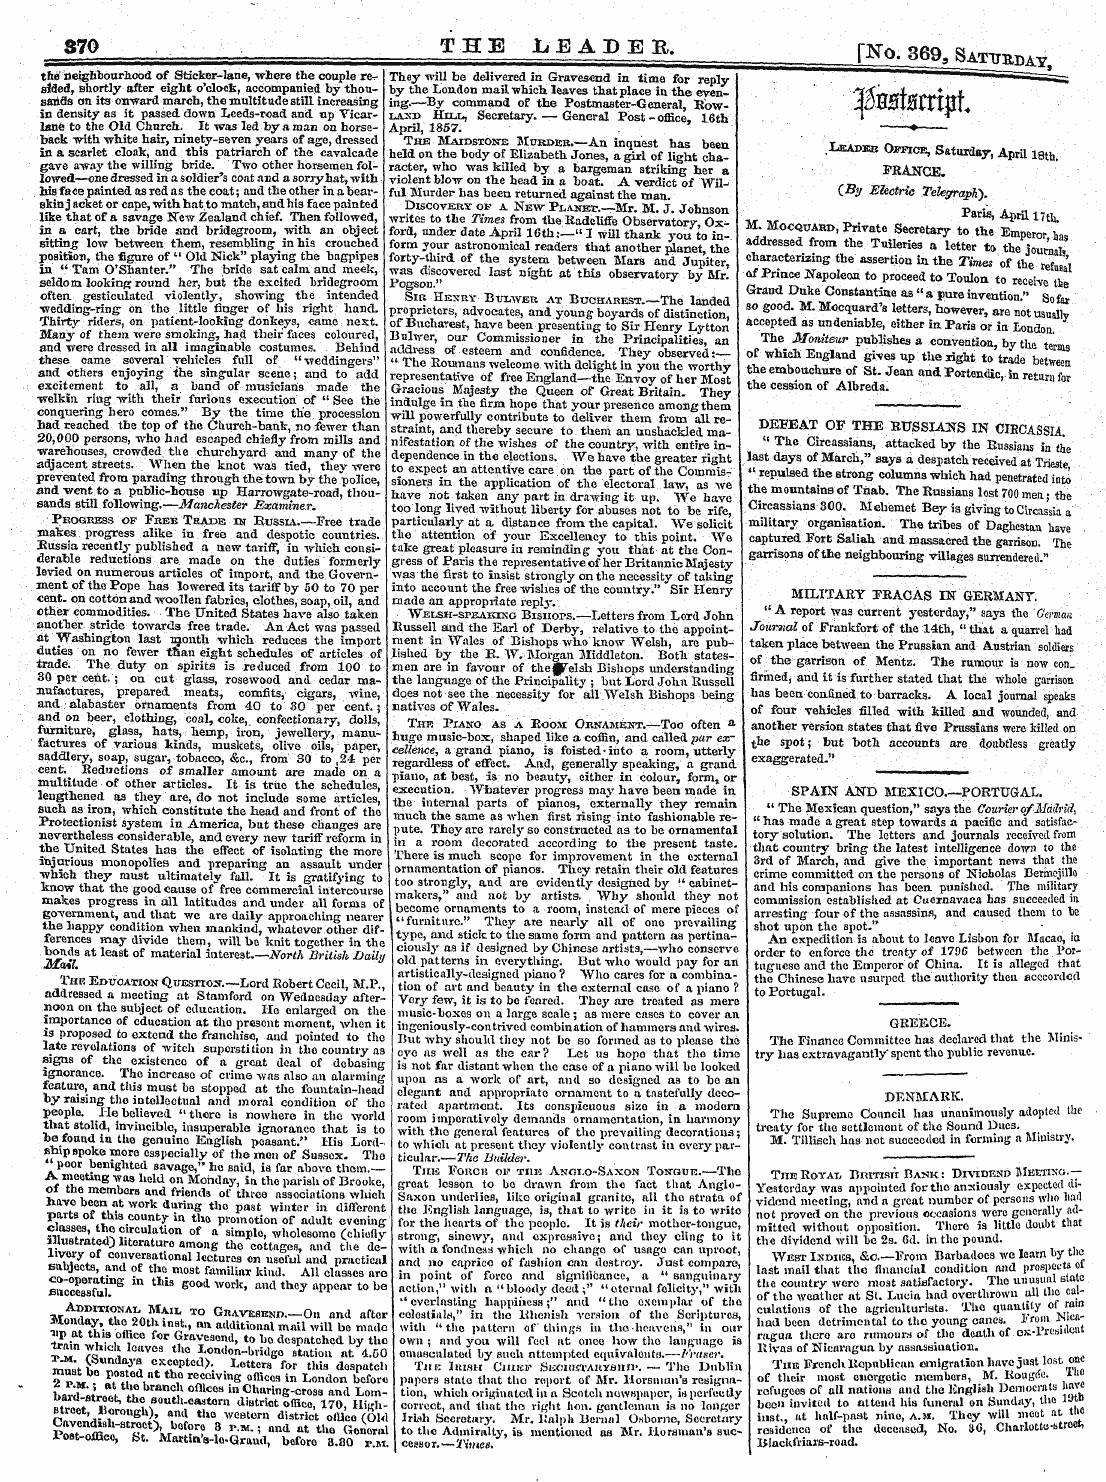 Leader (1850-1860): jS F Y, 2nd edition - V . —. Leader Ootice, Saturday, April 18...